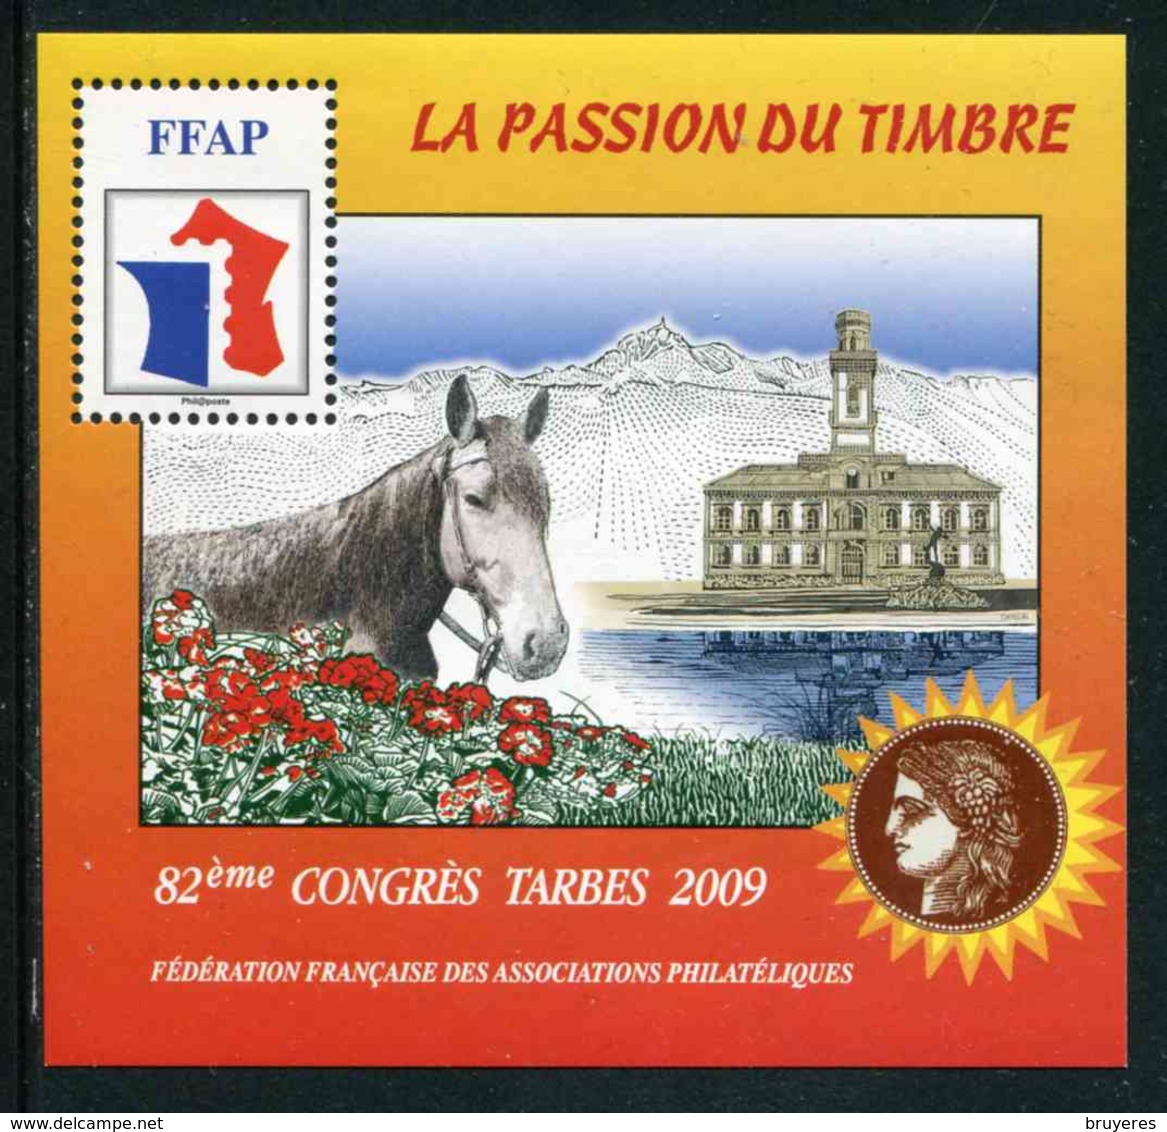 FEUILLET-SOUVENIR** De 2009 De La FFAP "82ème CONGRES TARBES - LA PASSION DU TIMBRE - Cheval" - FFAP